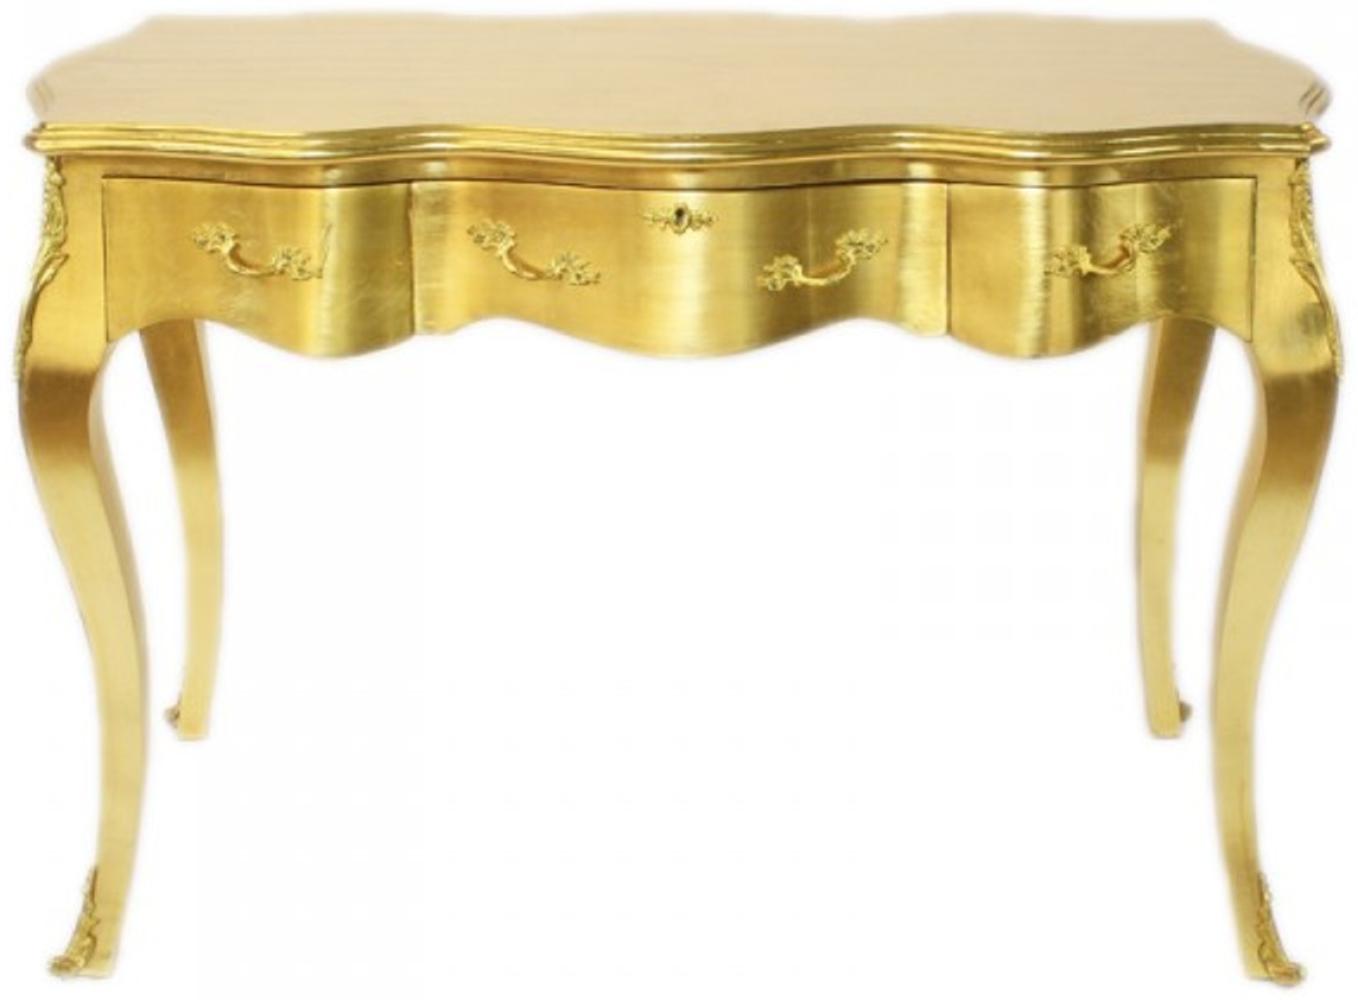 Casa Padrino Barock Schreibtisch Sekretär / Konsole Gold 120 x 60 x H80 cm - Luxus Möbel Bild 1